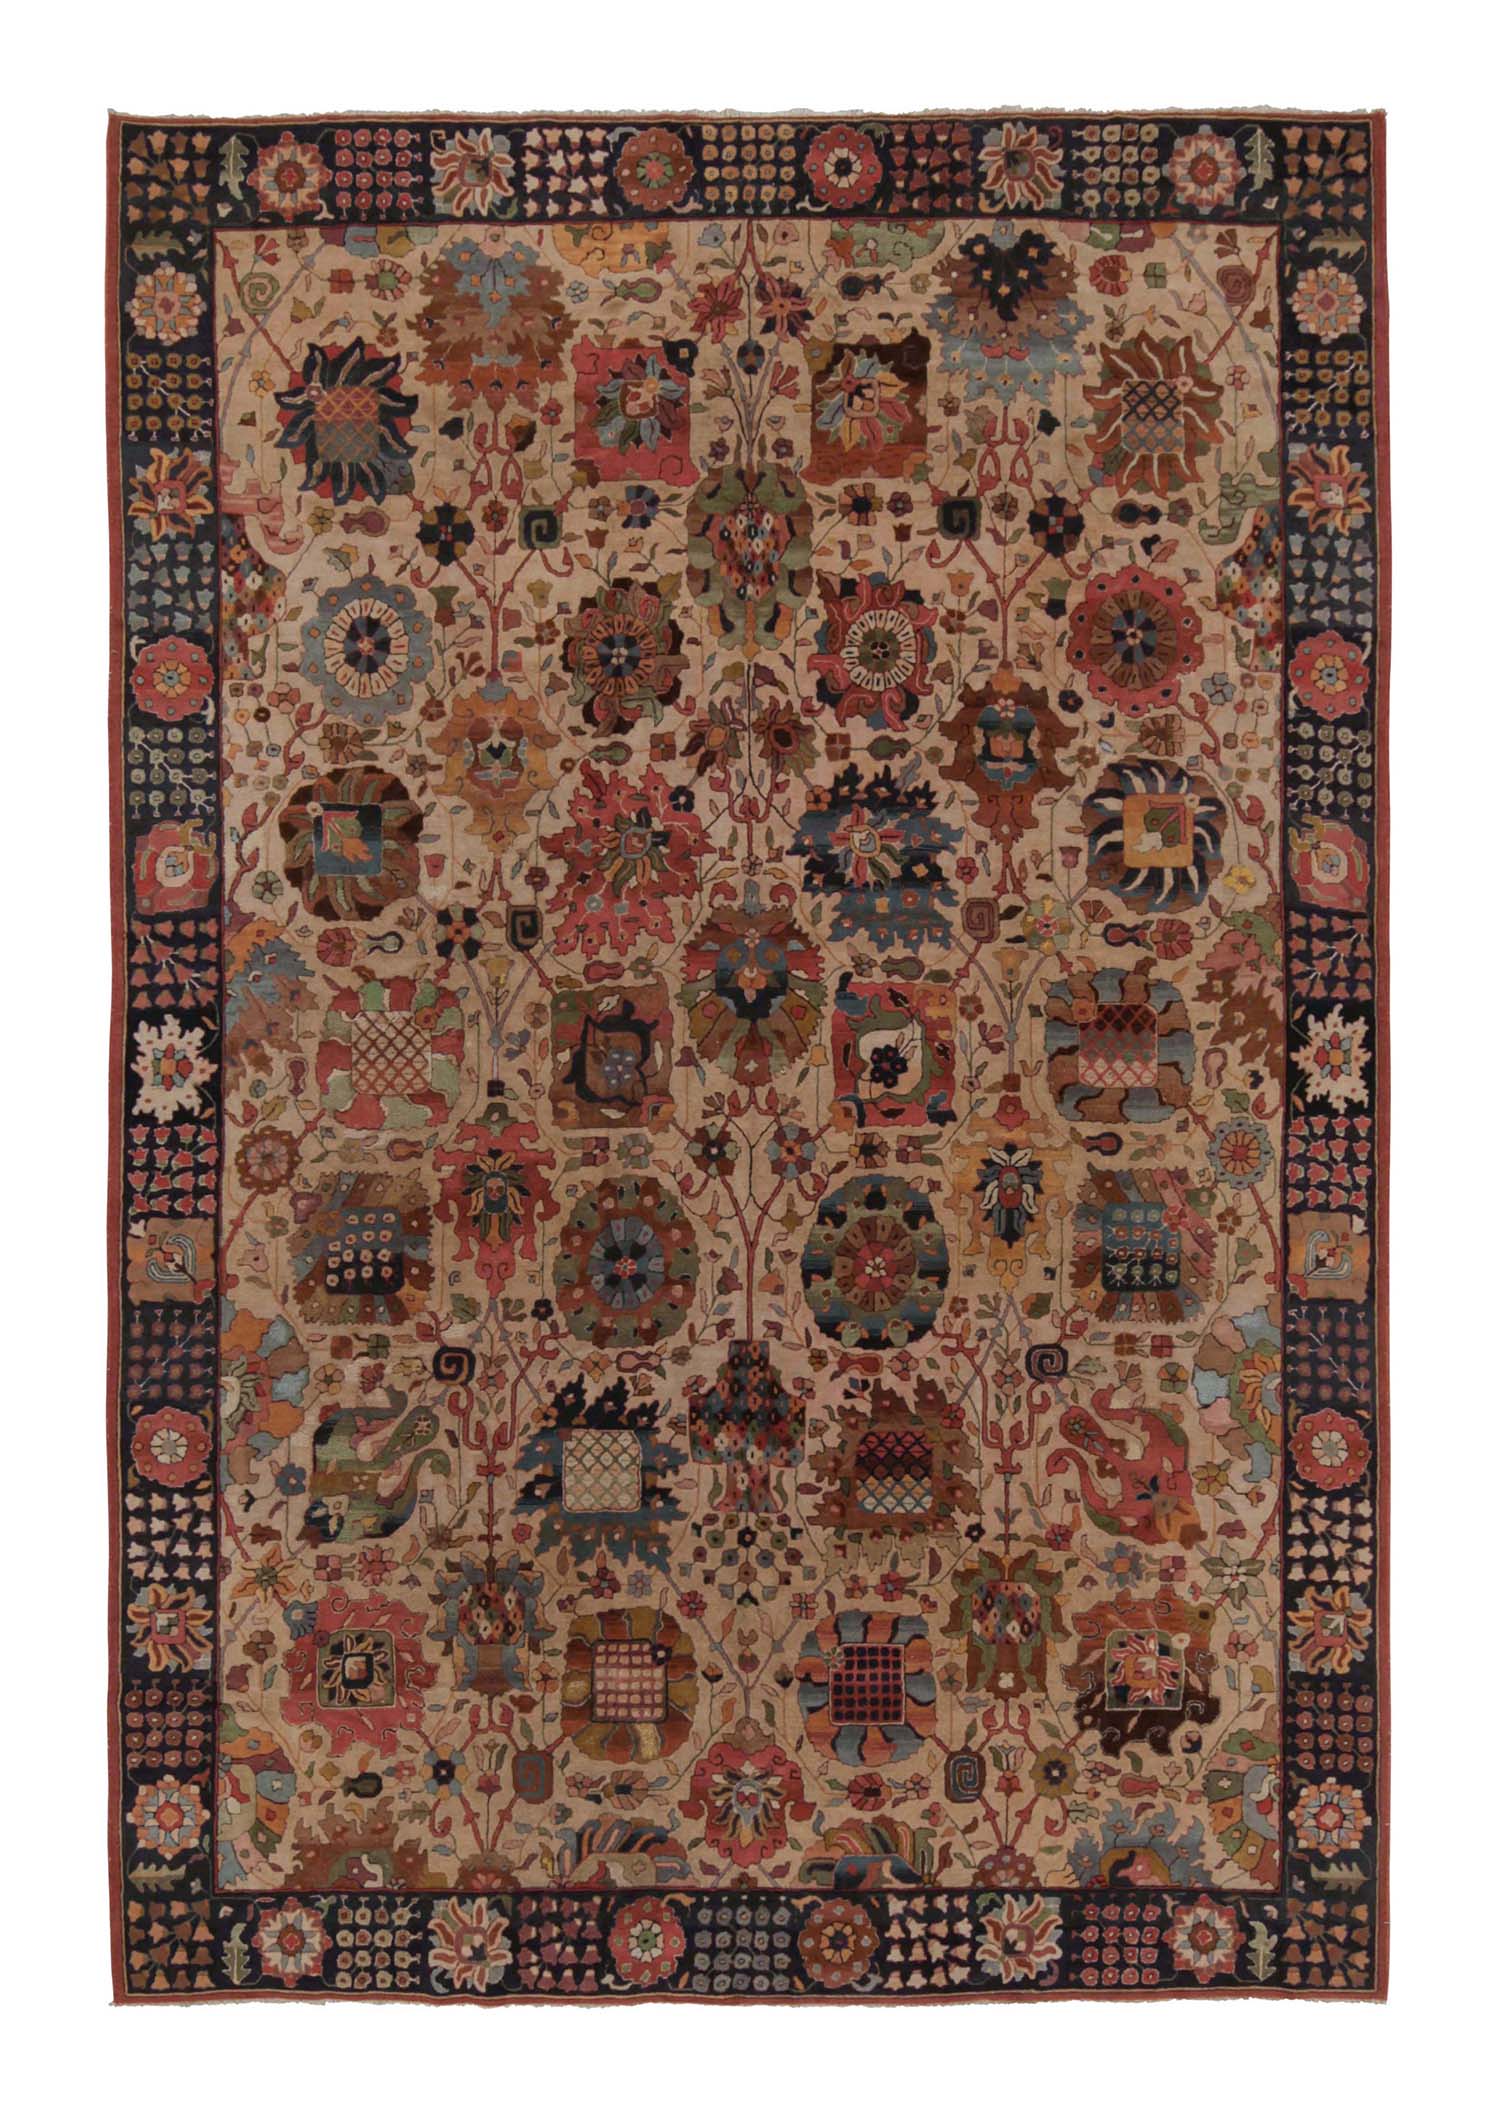 Antiker handgehäkelter Teppich in Braun, Rot und Grün mit Blumenmuster von Teppich & Kelim